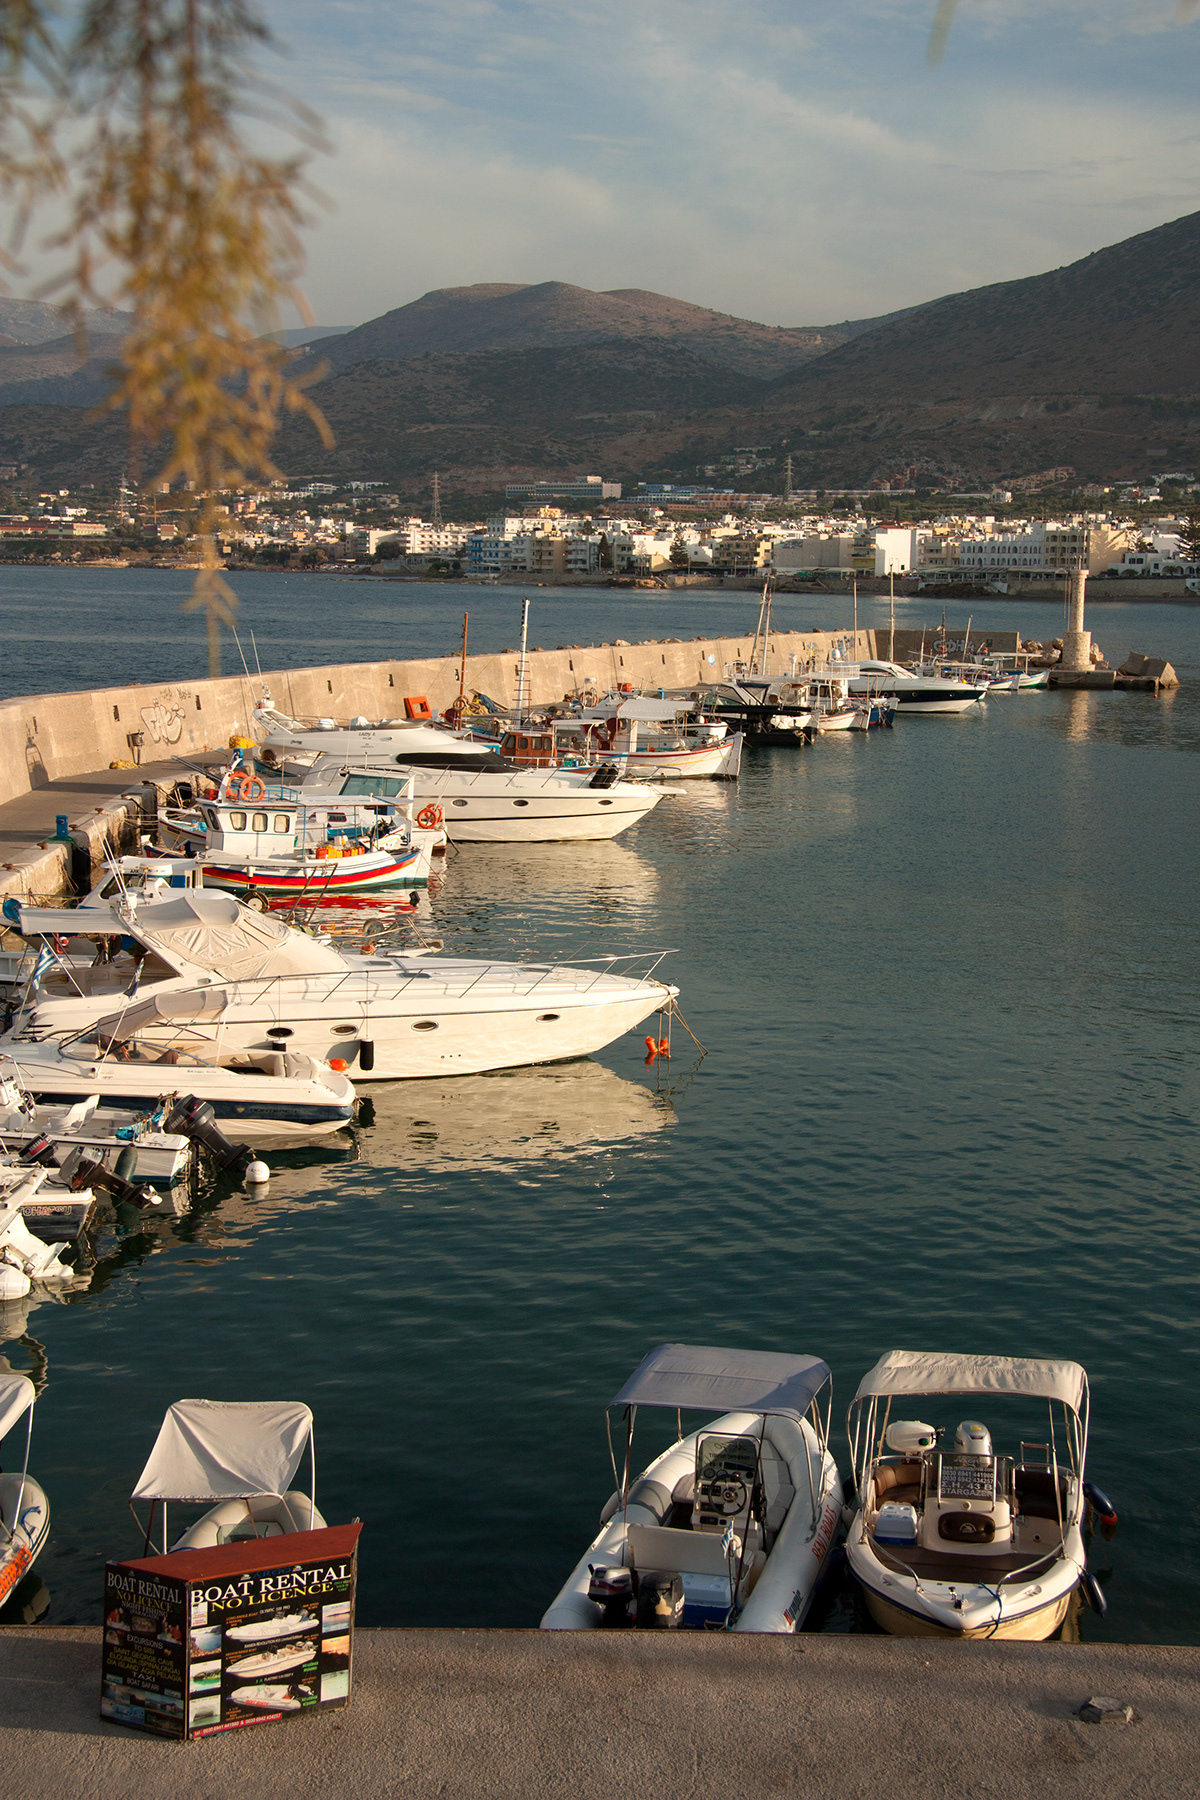 creta Crete Greece Grecia Travel vacation viajes mediterranean sea Ocean beach ruin minoan boat